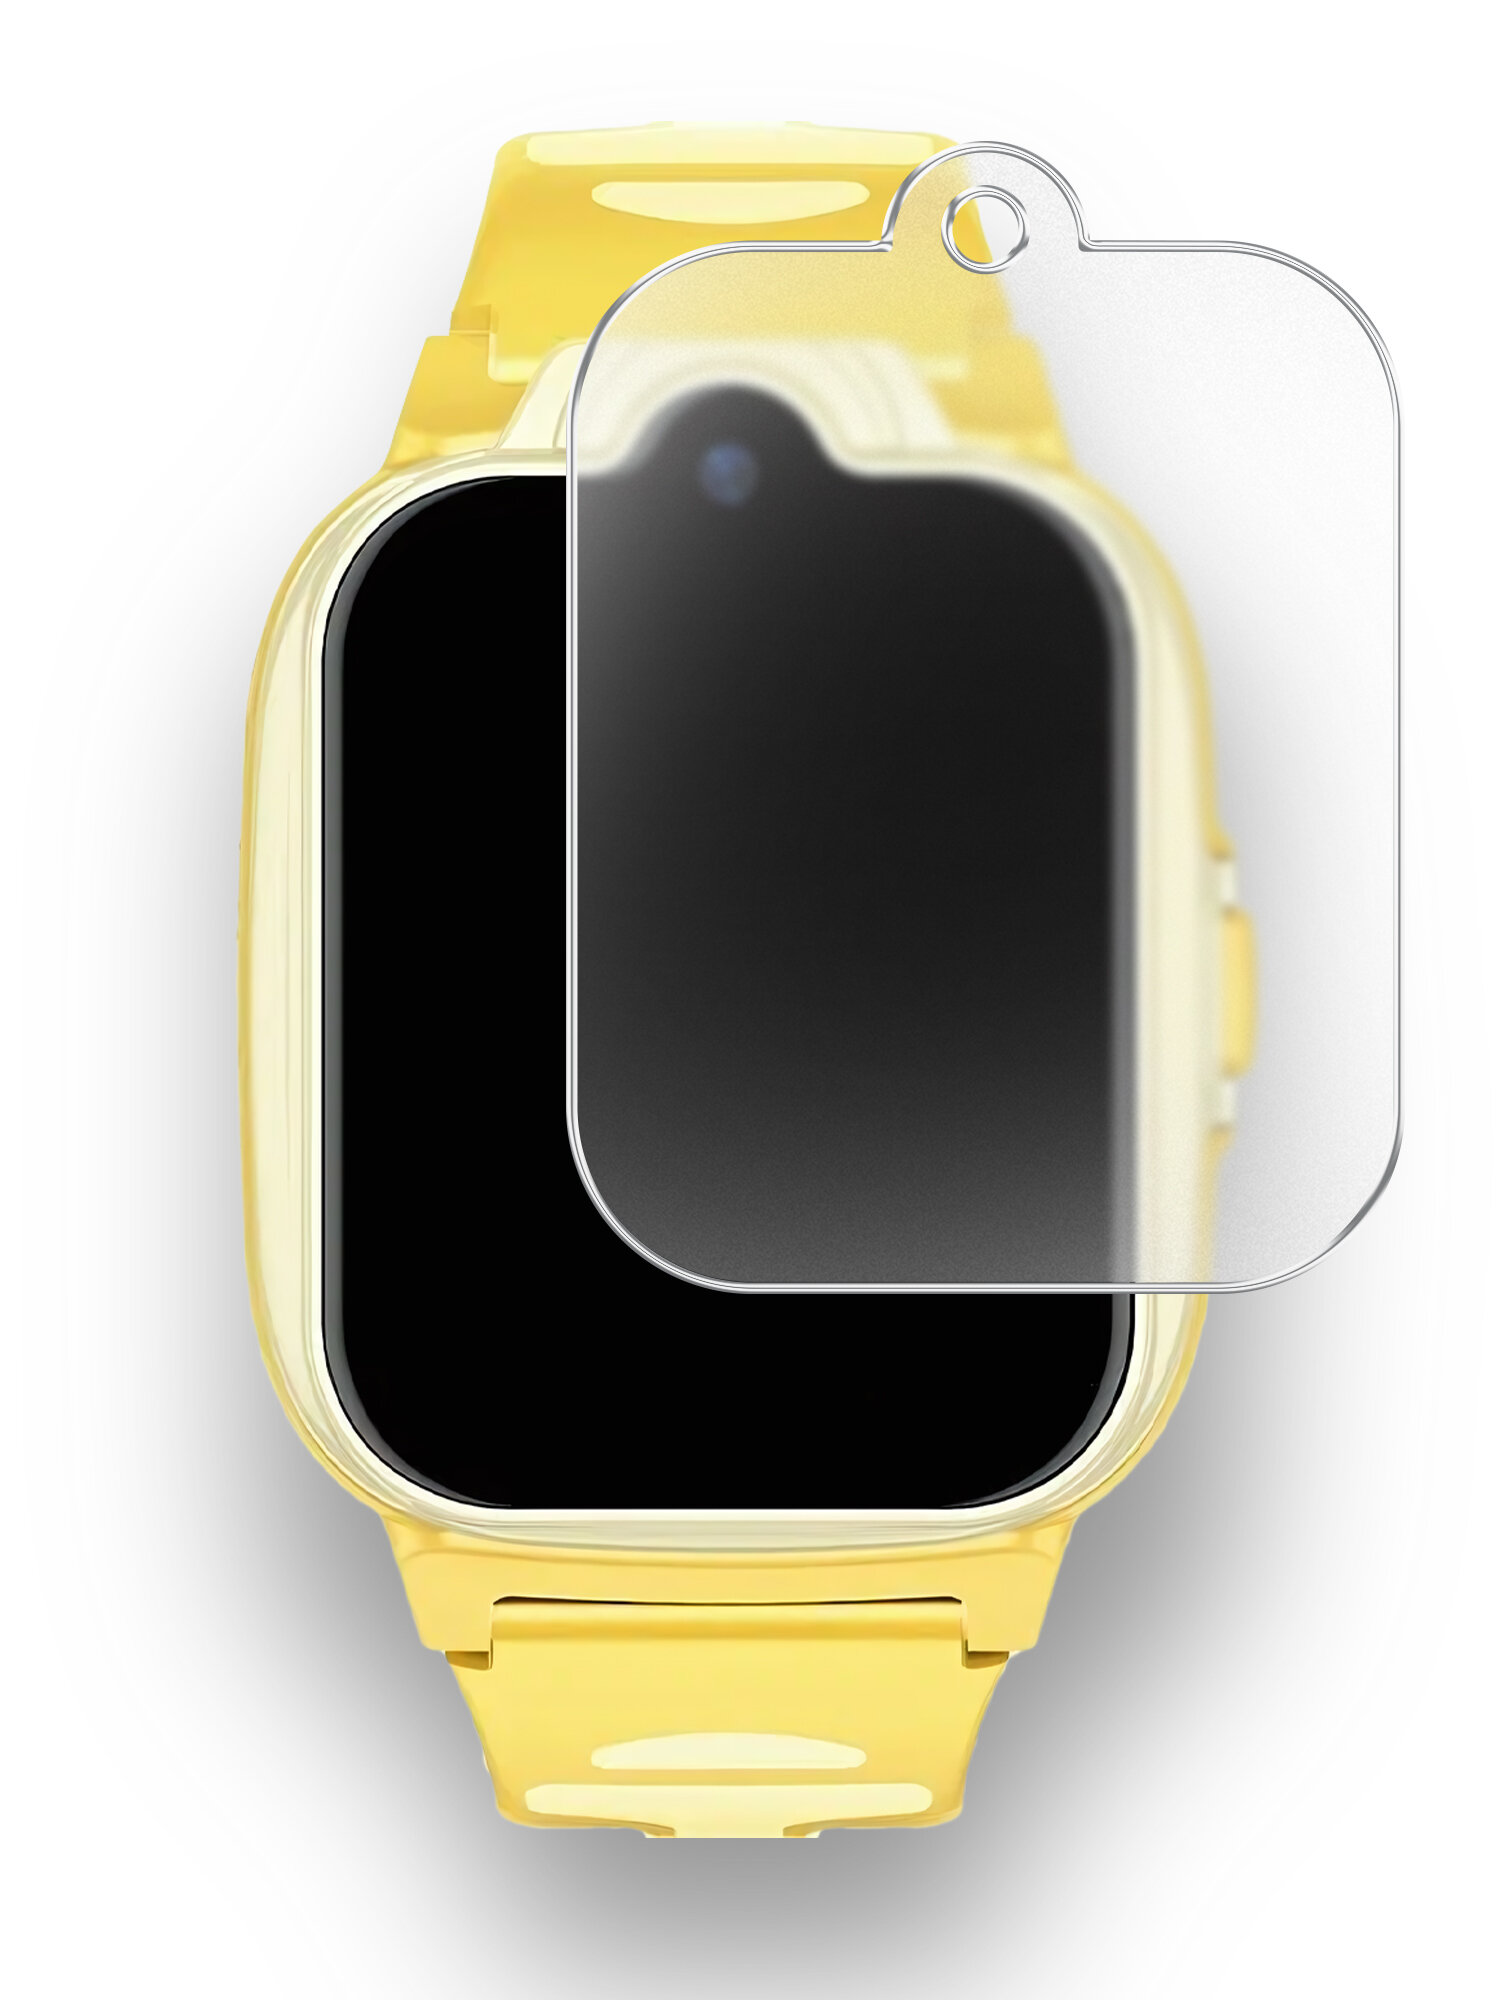 Защитная пленка на Philips Kids Wrist Phone (Филипс Кидс Вист Фон) матовая гидрогелевая с олеофобным покрытием силиконовая клеевая основа полноклеевая Brozo